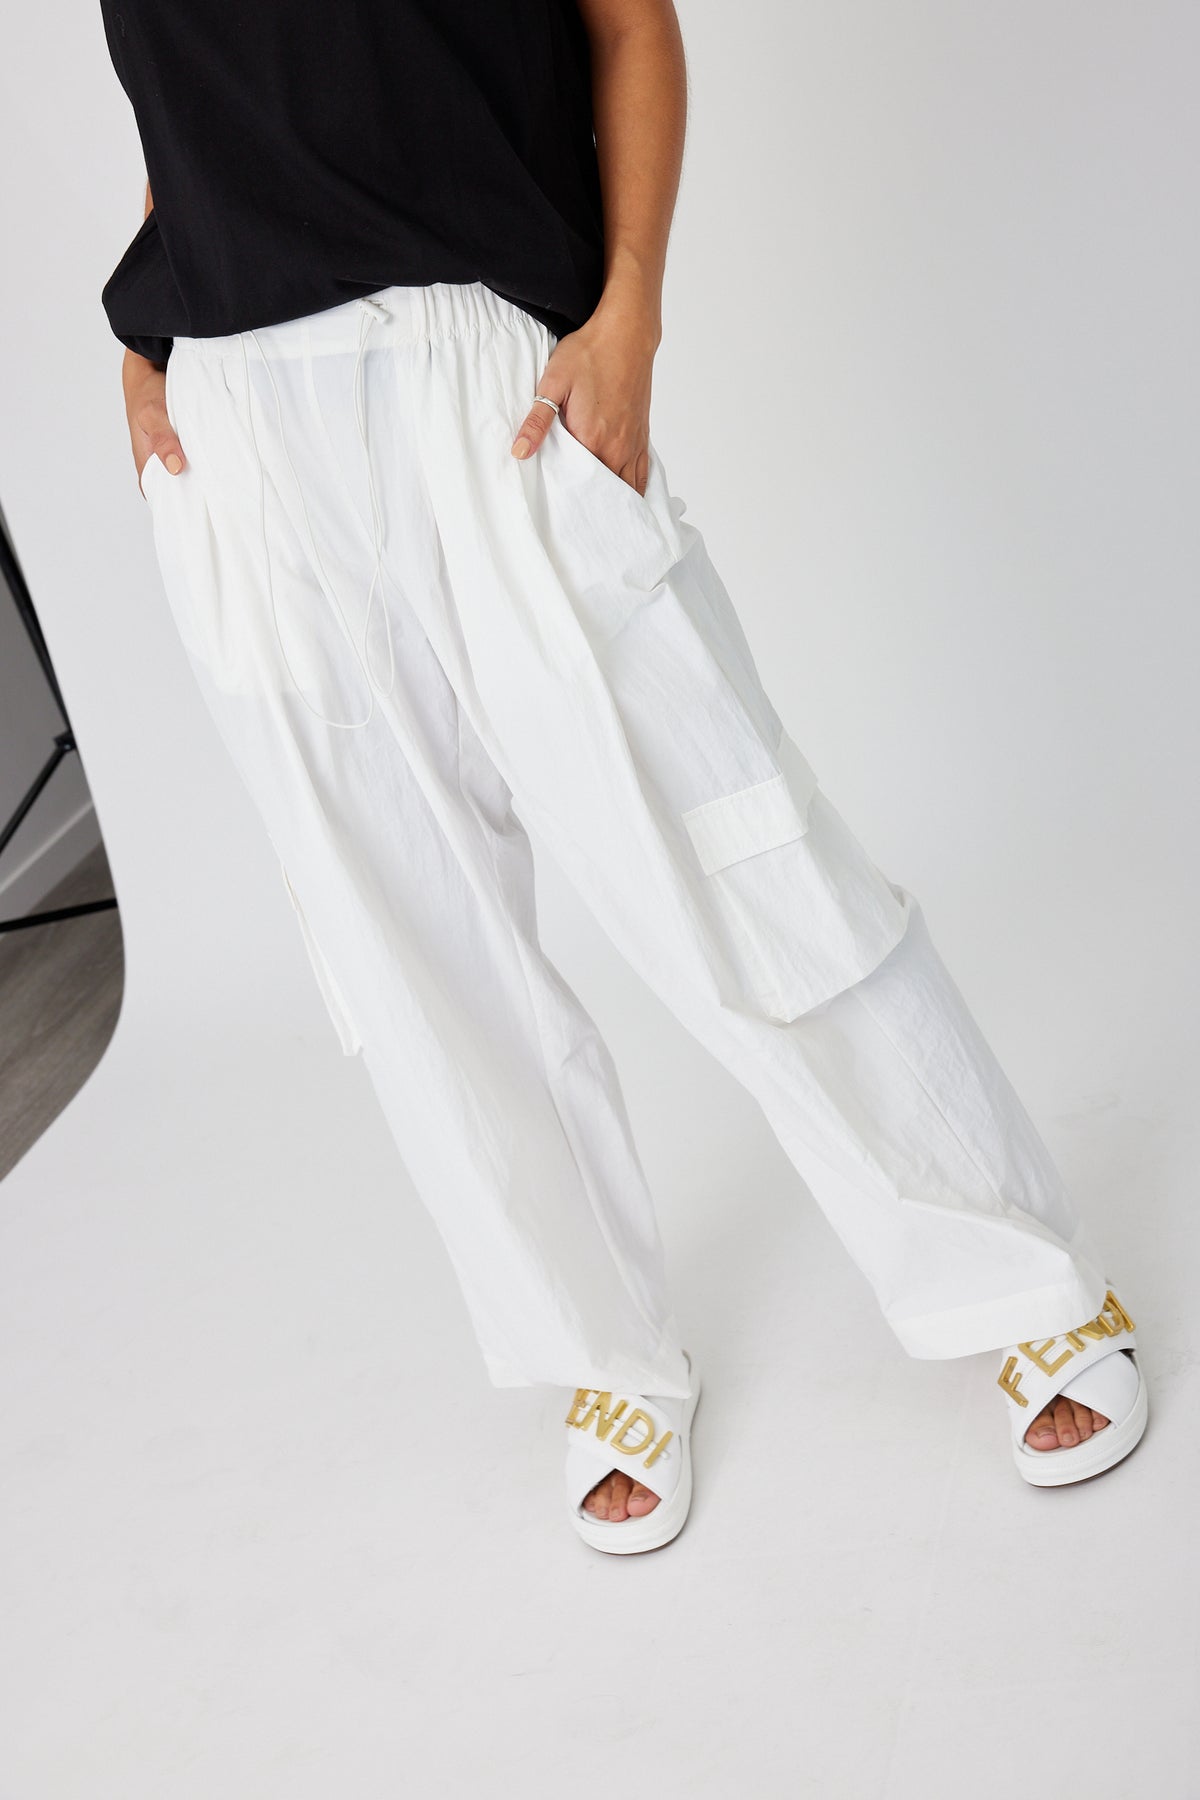 White Linen Pants, Wide Leg Pants, Linen Clothes, White Summer Pants, Loose  Pants, Minimalist Clothing, Oversize Pants, Plus Size Pants -  Denmark